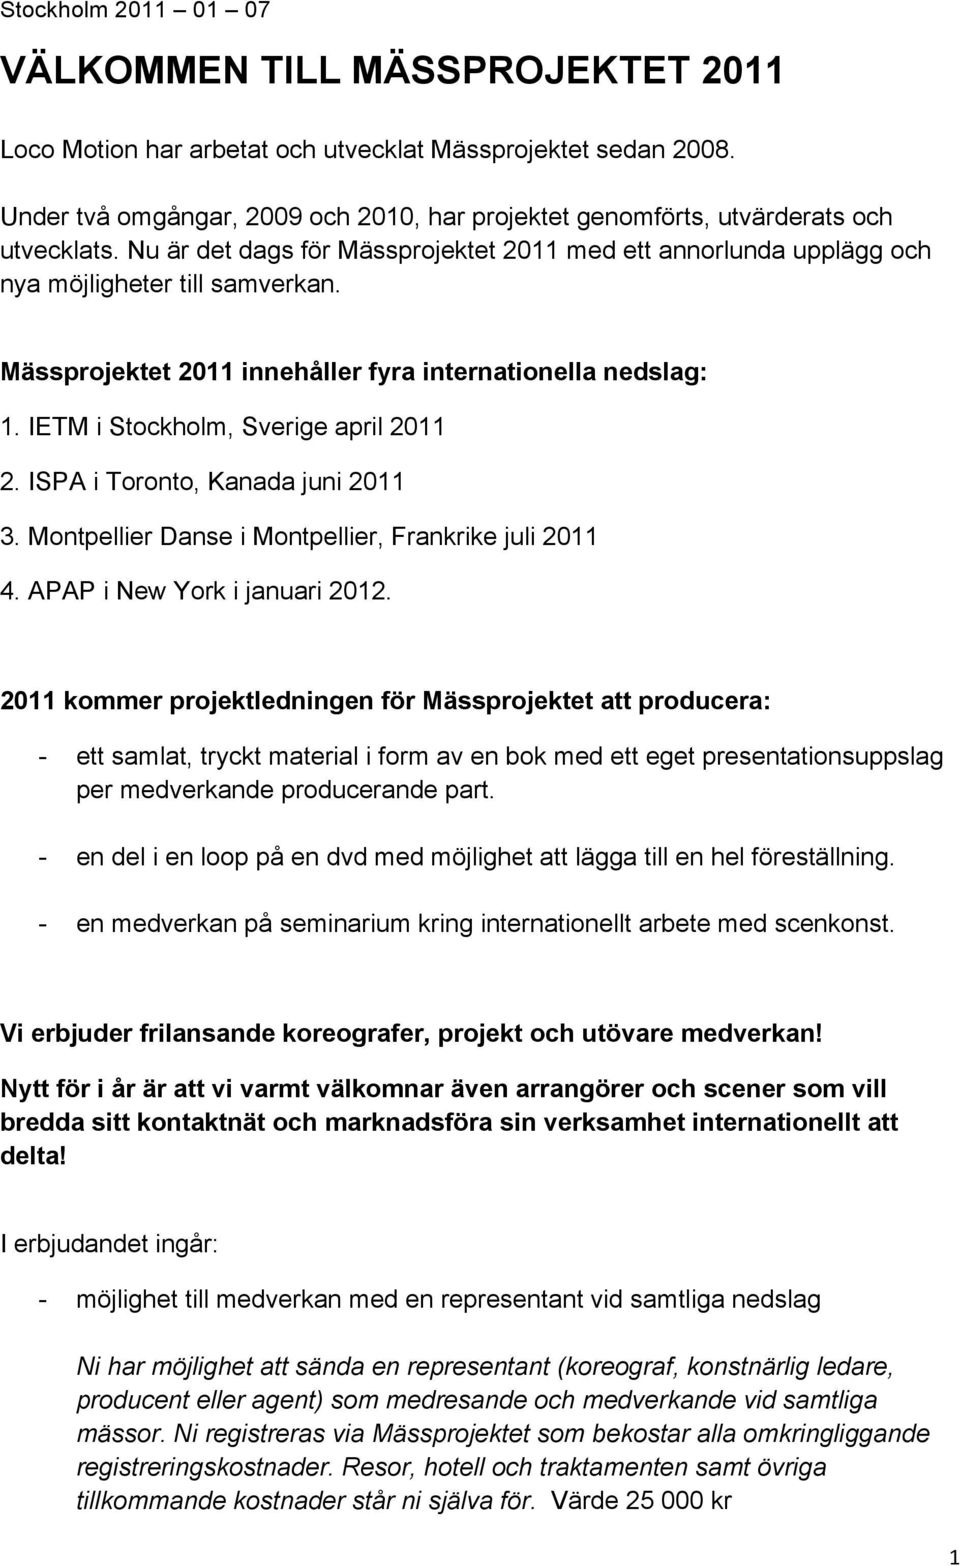 Mässprojektet 2011 innehåller fyra internationella nedslag: 1. IETM i Stockholm, Sverige april 2011 2. ISPA i Toronto, Kanada juni 2011 3. Montpellier Danse i Montpellier, Frankrike juli 2011 4.